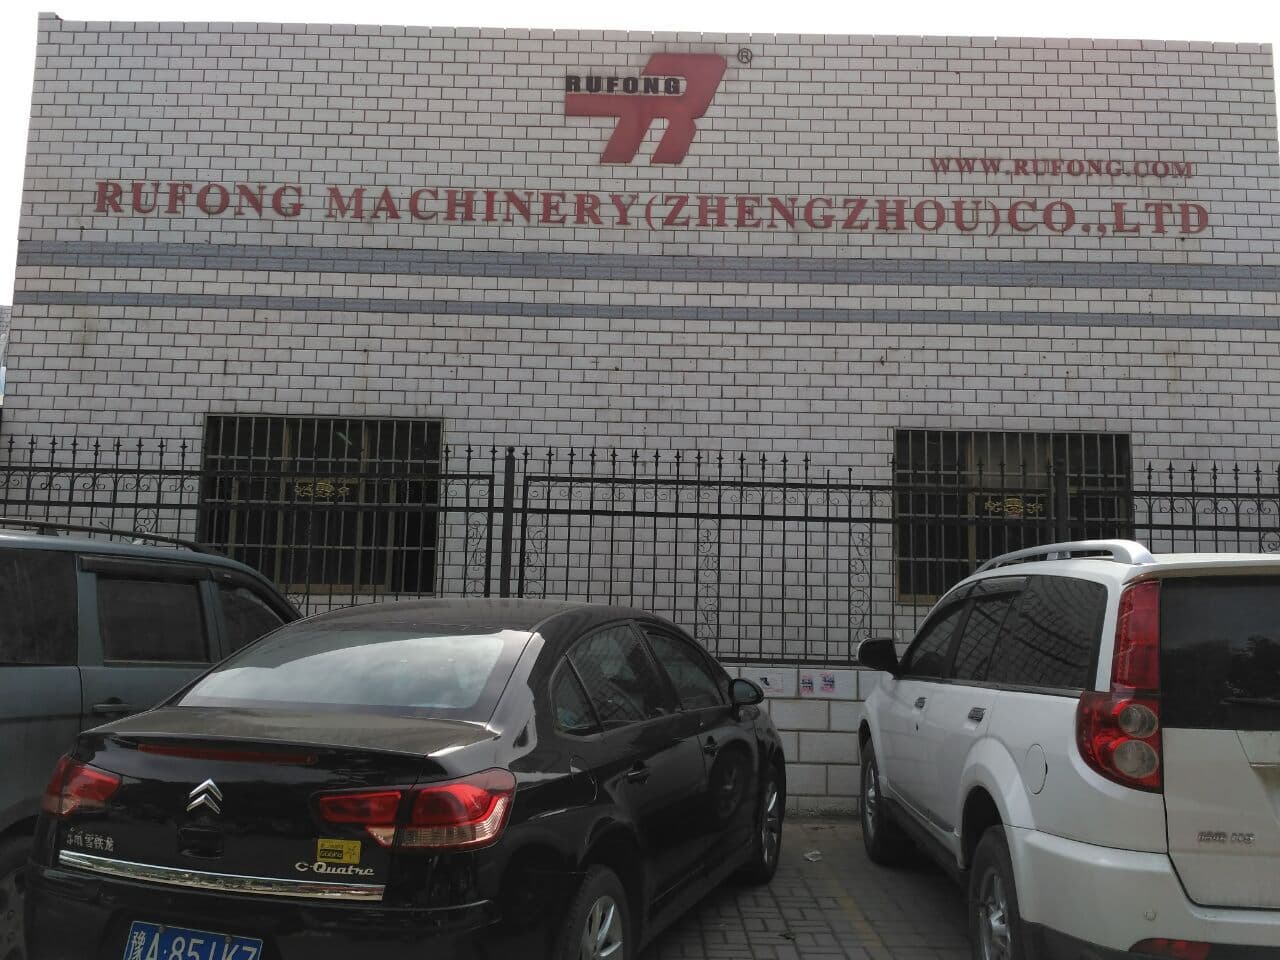 Rufong Machinery (Zhengzhou) Co., Ltd.